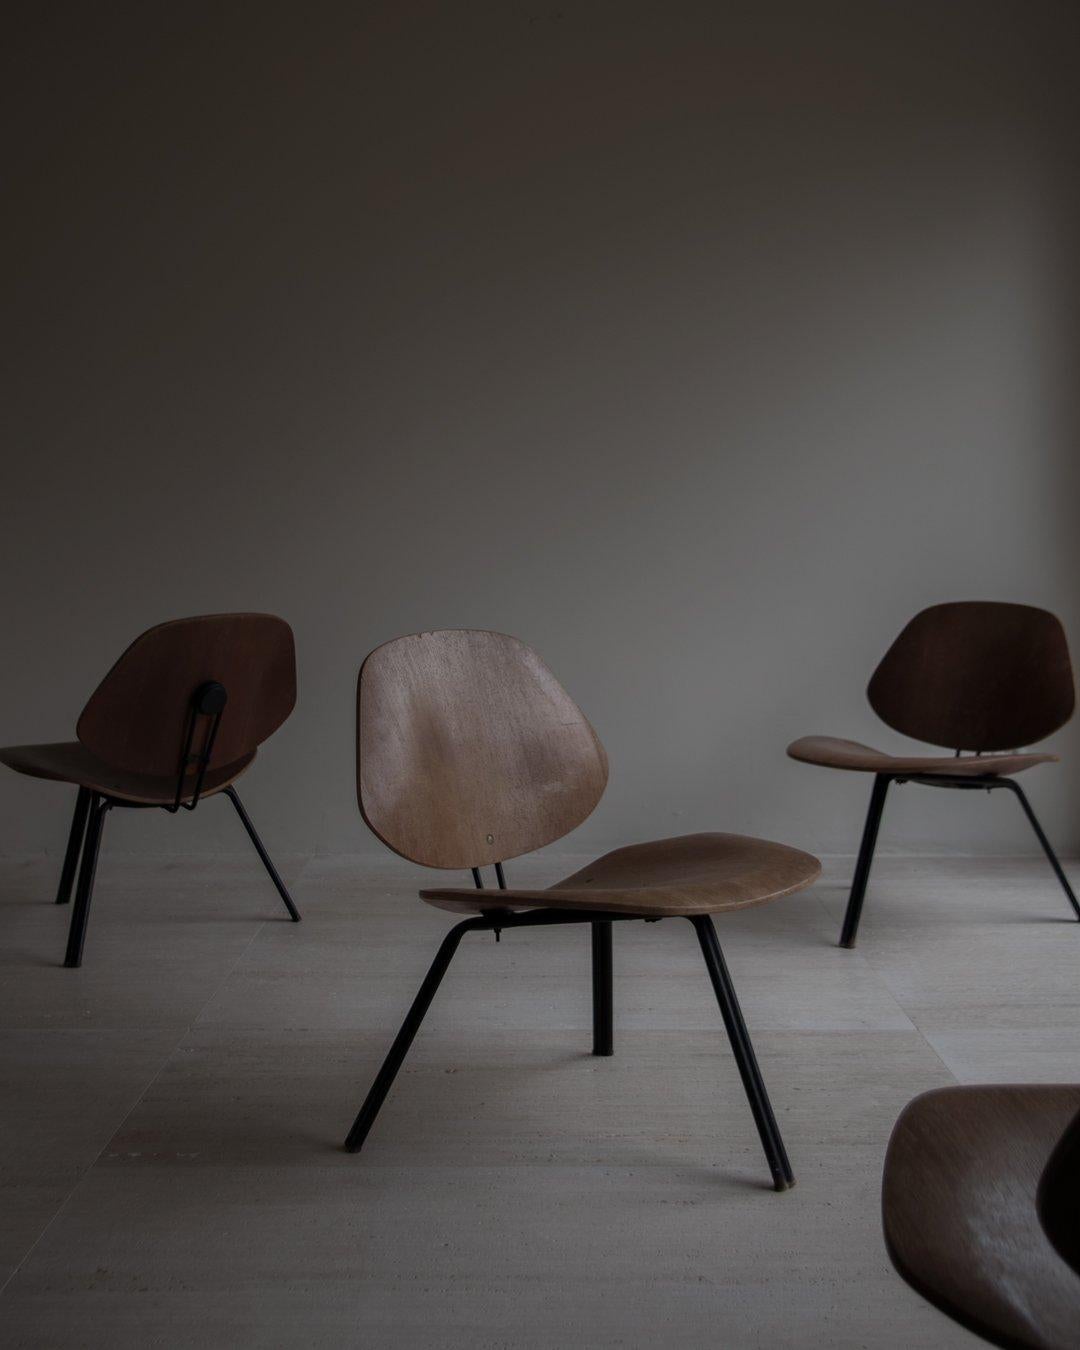 Chaises rares des années 1960 d'Osvaldo Borsani. Les chaises ont été méticuleusement restaurées pour en faire ressortir la beauté, tout en préservant la patine souhaitable et les preuves de l'âge. Pieds en acier doublés, placage teck, siège et